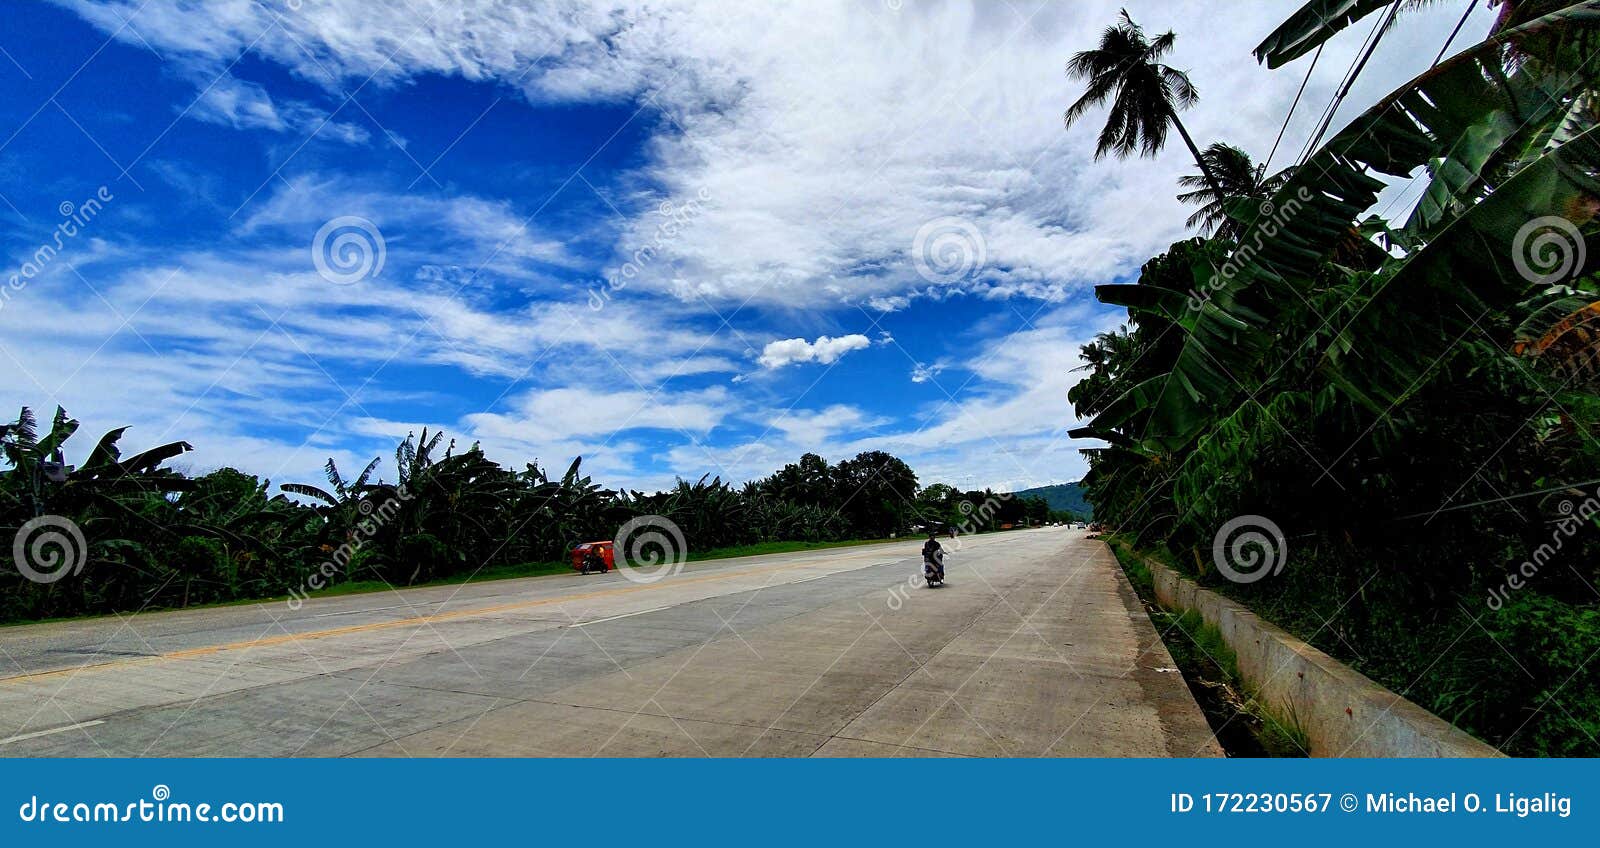 empty road in sta. cruz town, davao del sur, philippines